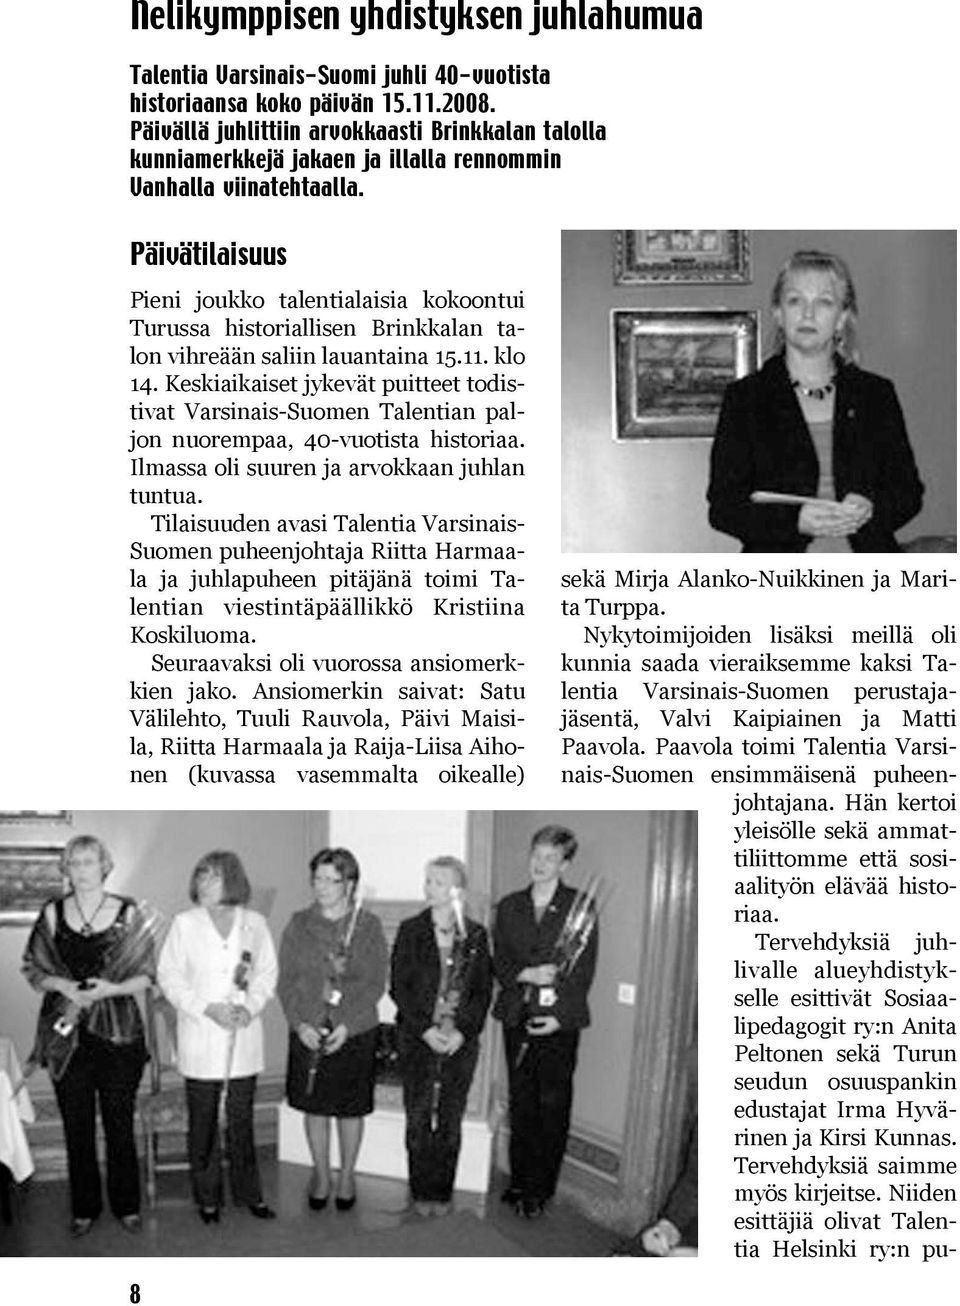 Päivätilaisuus Pieni joukko talentialaisia kokoontui Turussa historiallisen Brinkkalan talon vihreään saliin lauantaina 15.11. klo 14.